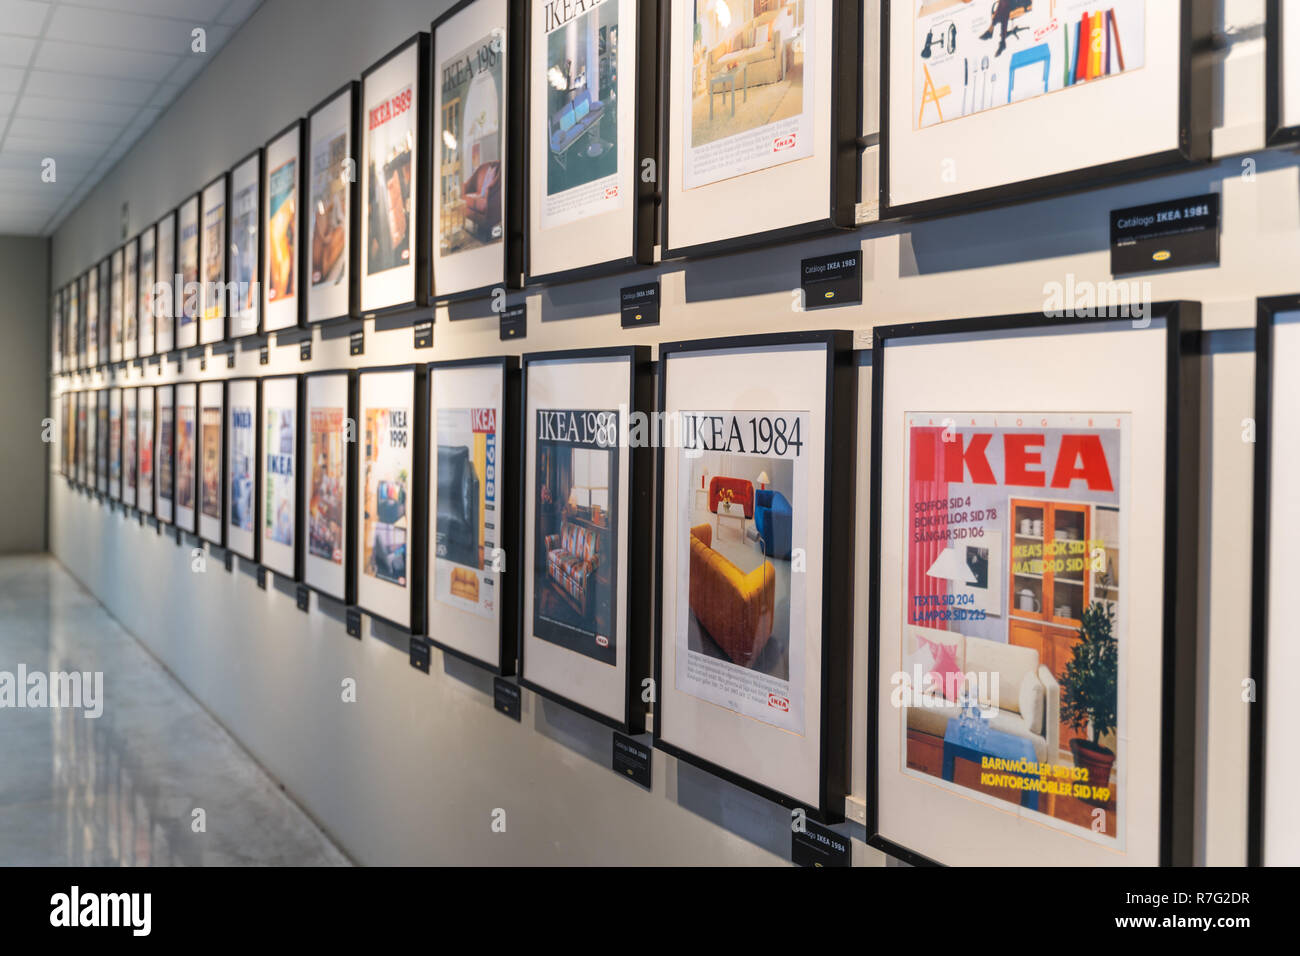 Valencia, Espagne - Décembre 09, 2018 : magasin Ikea lot en Alfafar, Valence. Exposition de l'ancien catalogues Ikea, encadrée sur le mur. Ikea Vintage gallery Banque D'Images